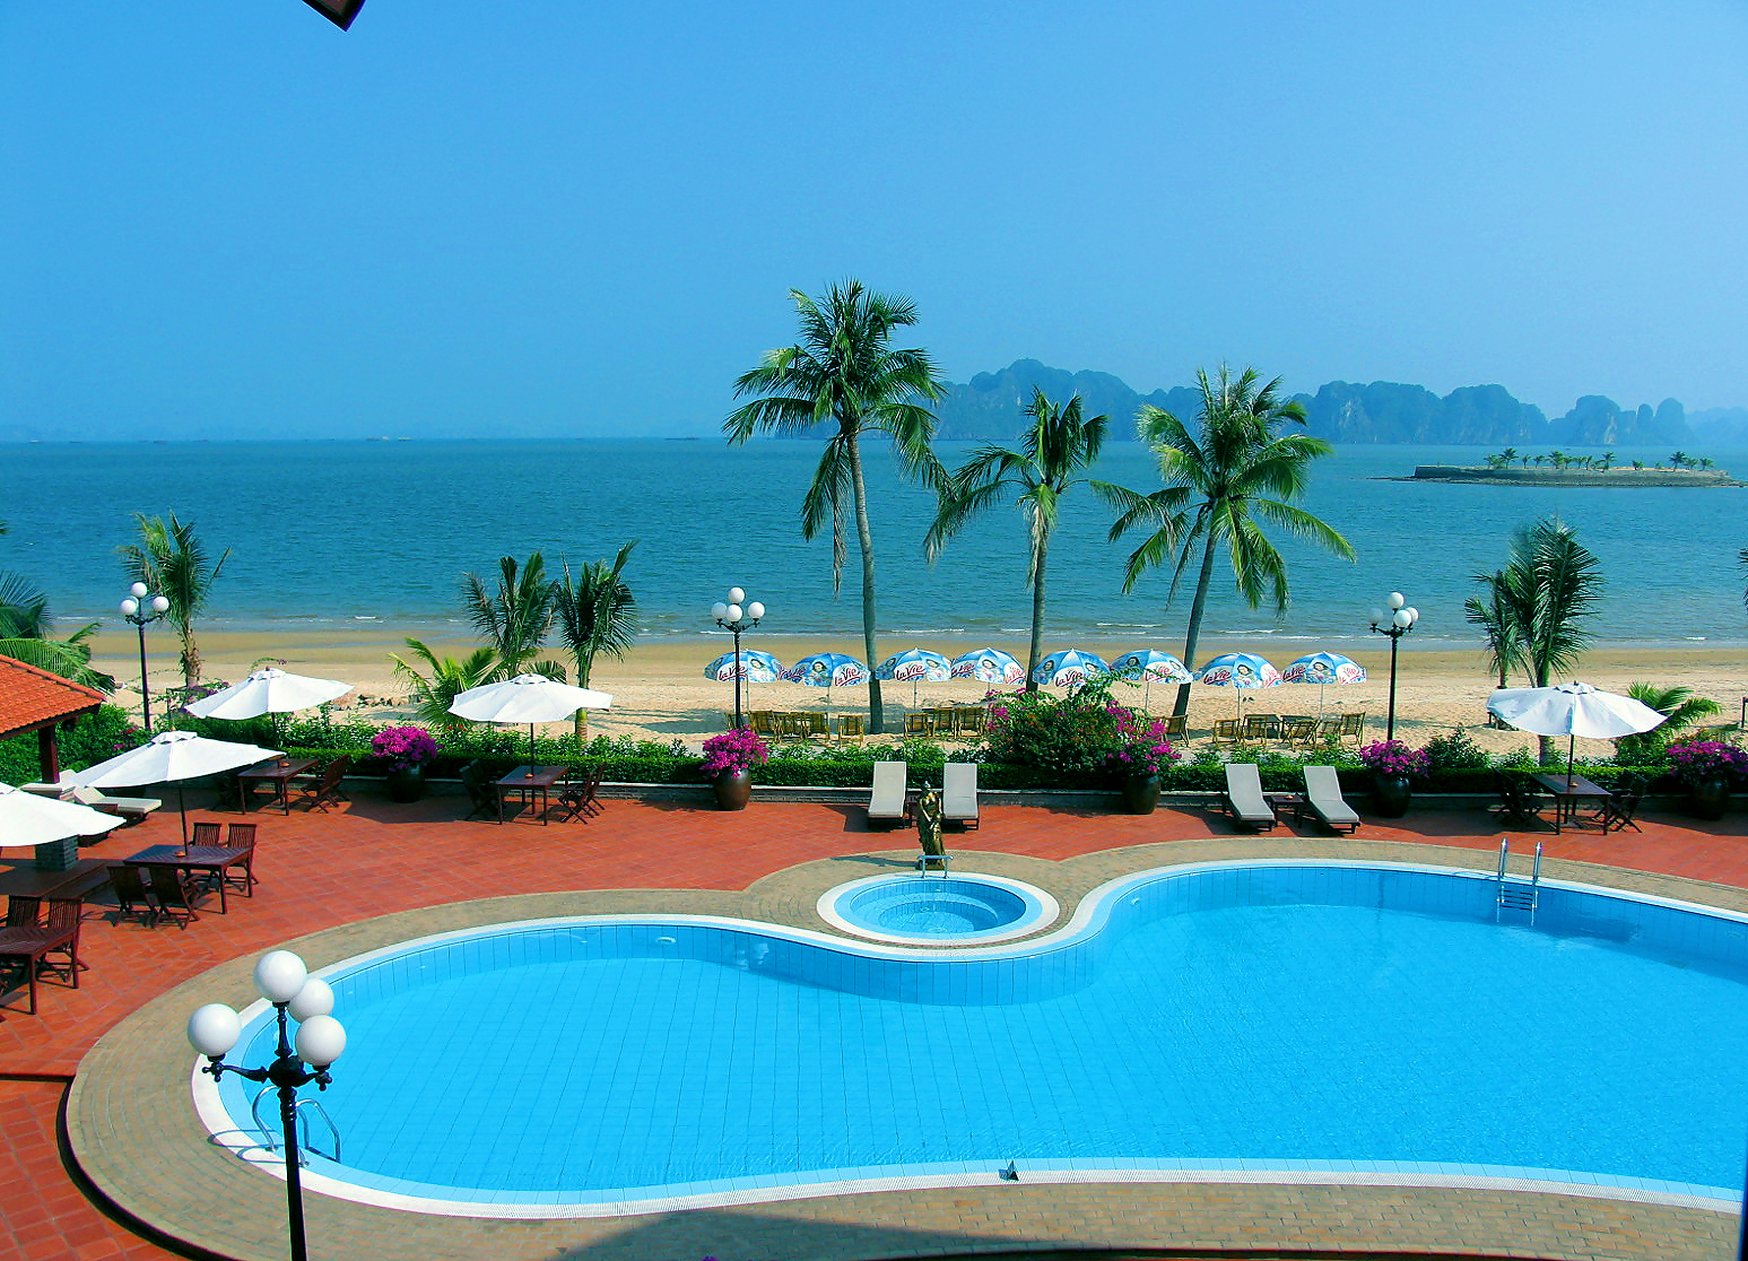 Foto van Tuan Chau Resort beach met hoog niveau van netheid